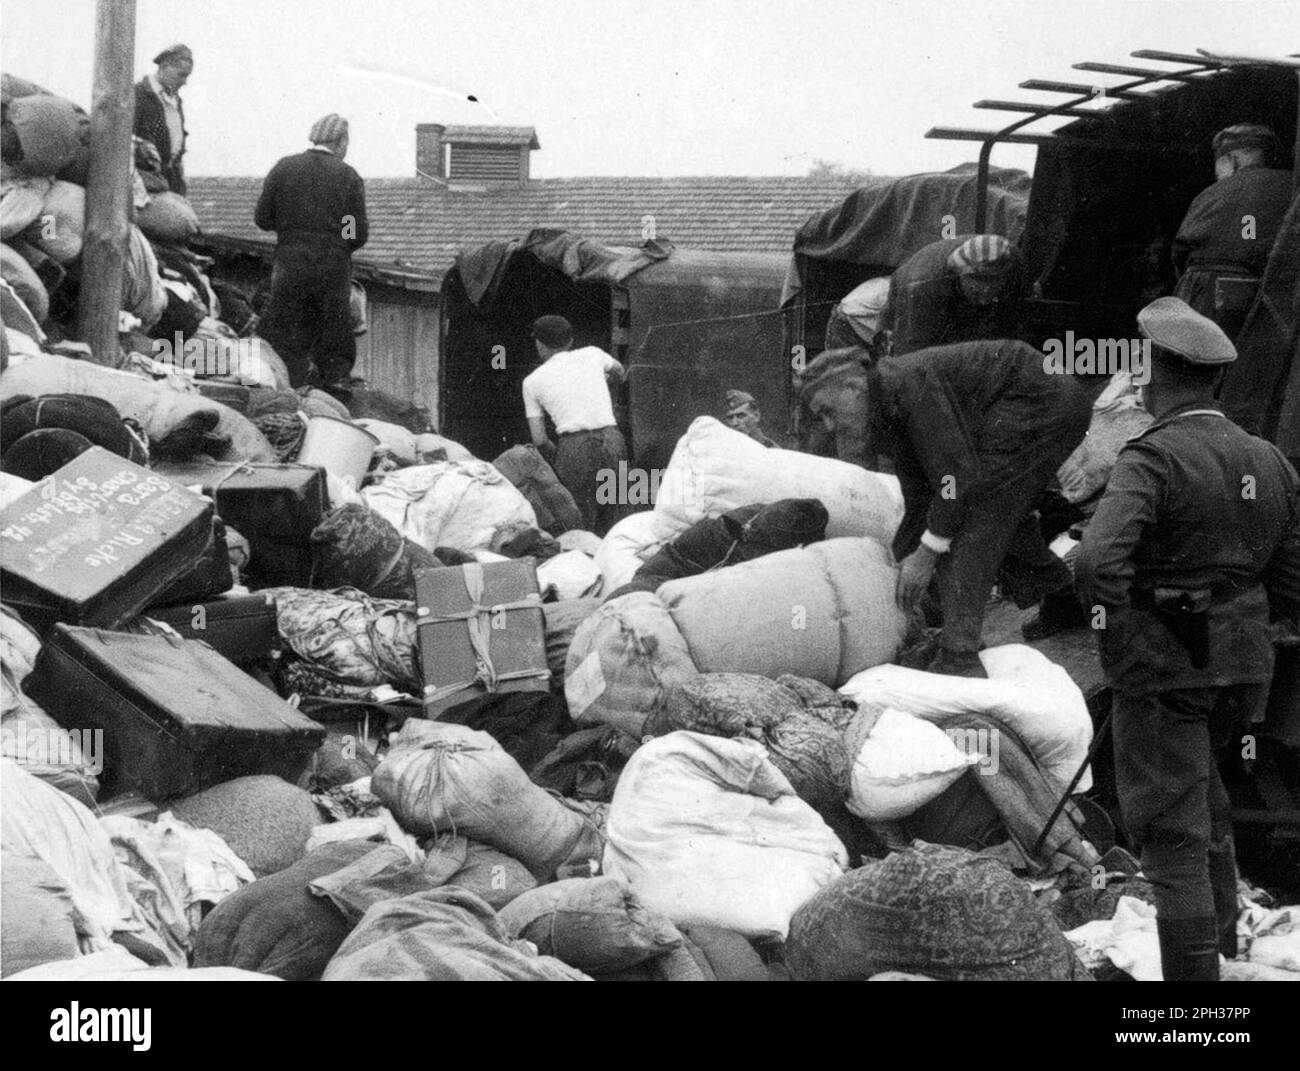 Les casernes 'Kanada' dans le camp de concentration d'Auschwitz, en Pologne occupée par l'Allemagne, pendant l'Holocauste. Les prisonniers trient les cas et les sacs de ceux qui ont été envoyés à la chambre à gaz à leur arrivée. Les entrepôts ont été nommés 'Kanada' parce qu'ils contenaient les effets personnels pillés des prisonniers et étaient considérés dans le camp comme la terre de l'abondance. Banque D'Images